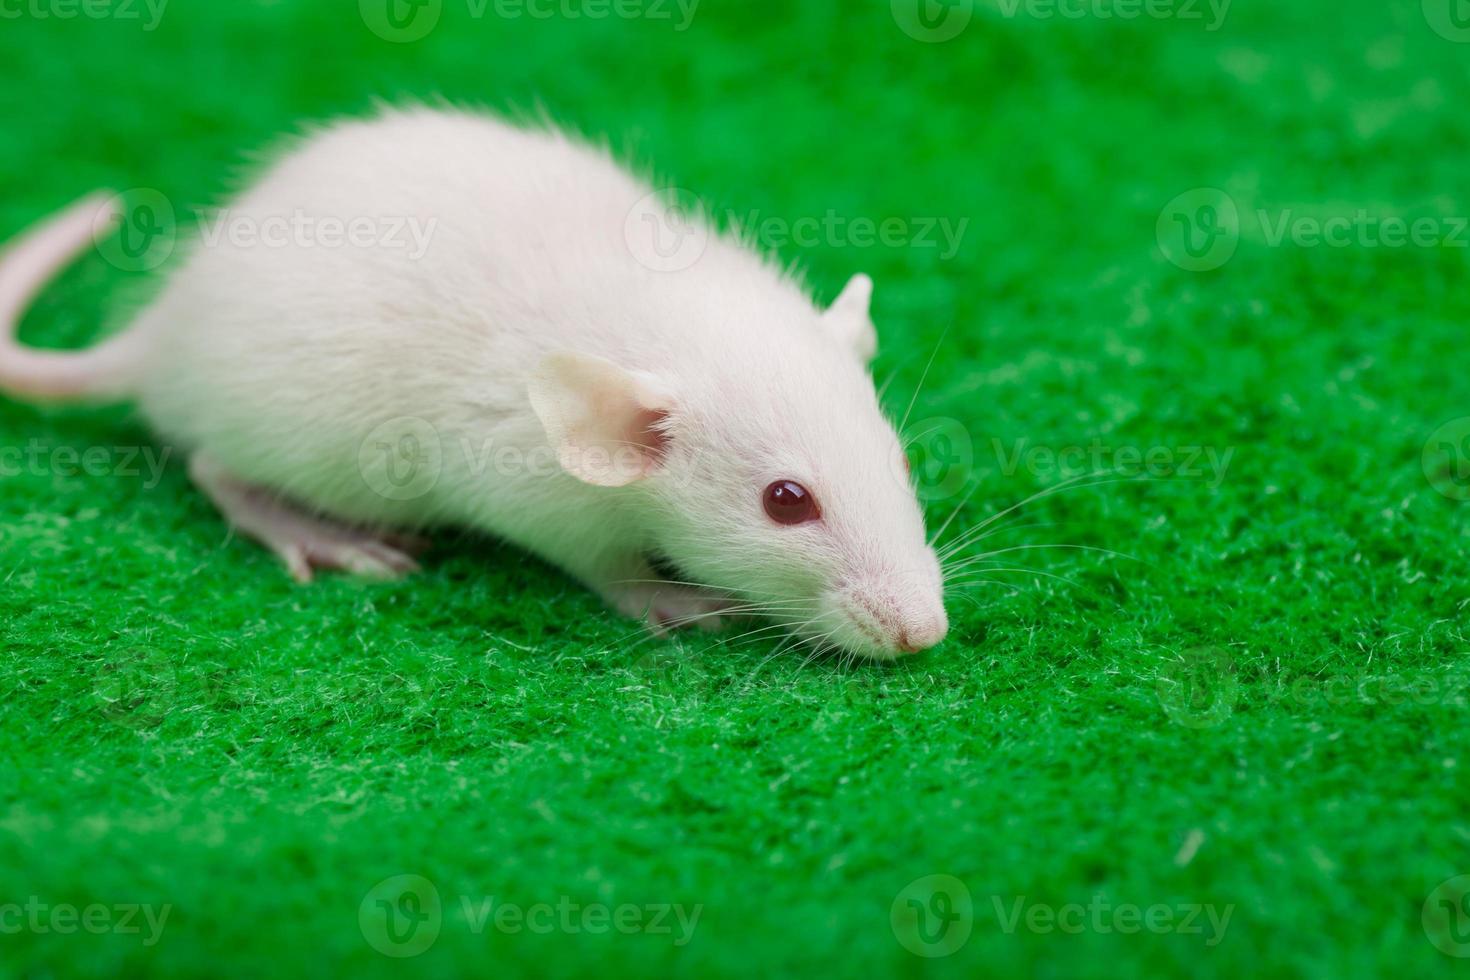 ratón blanco sobre un fondo de hierba verde foto